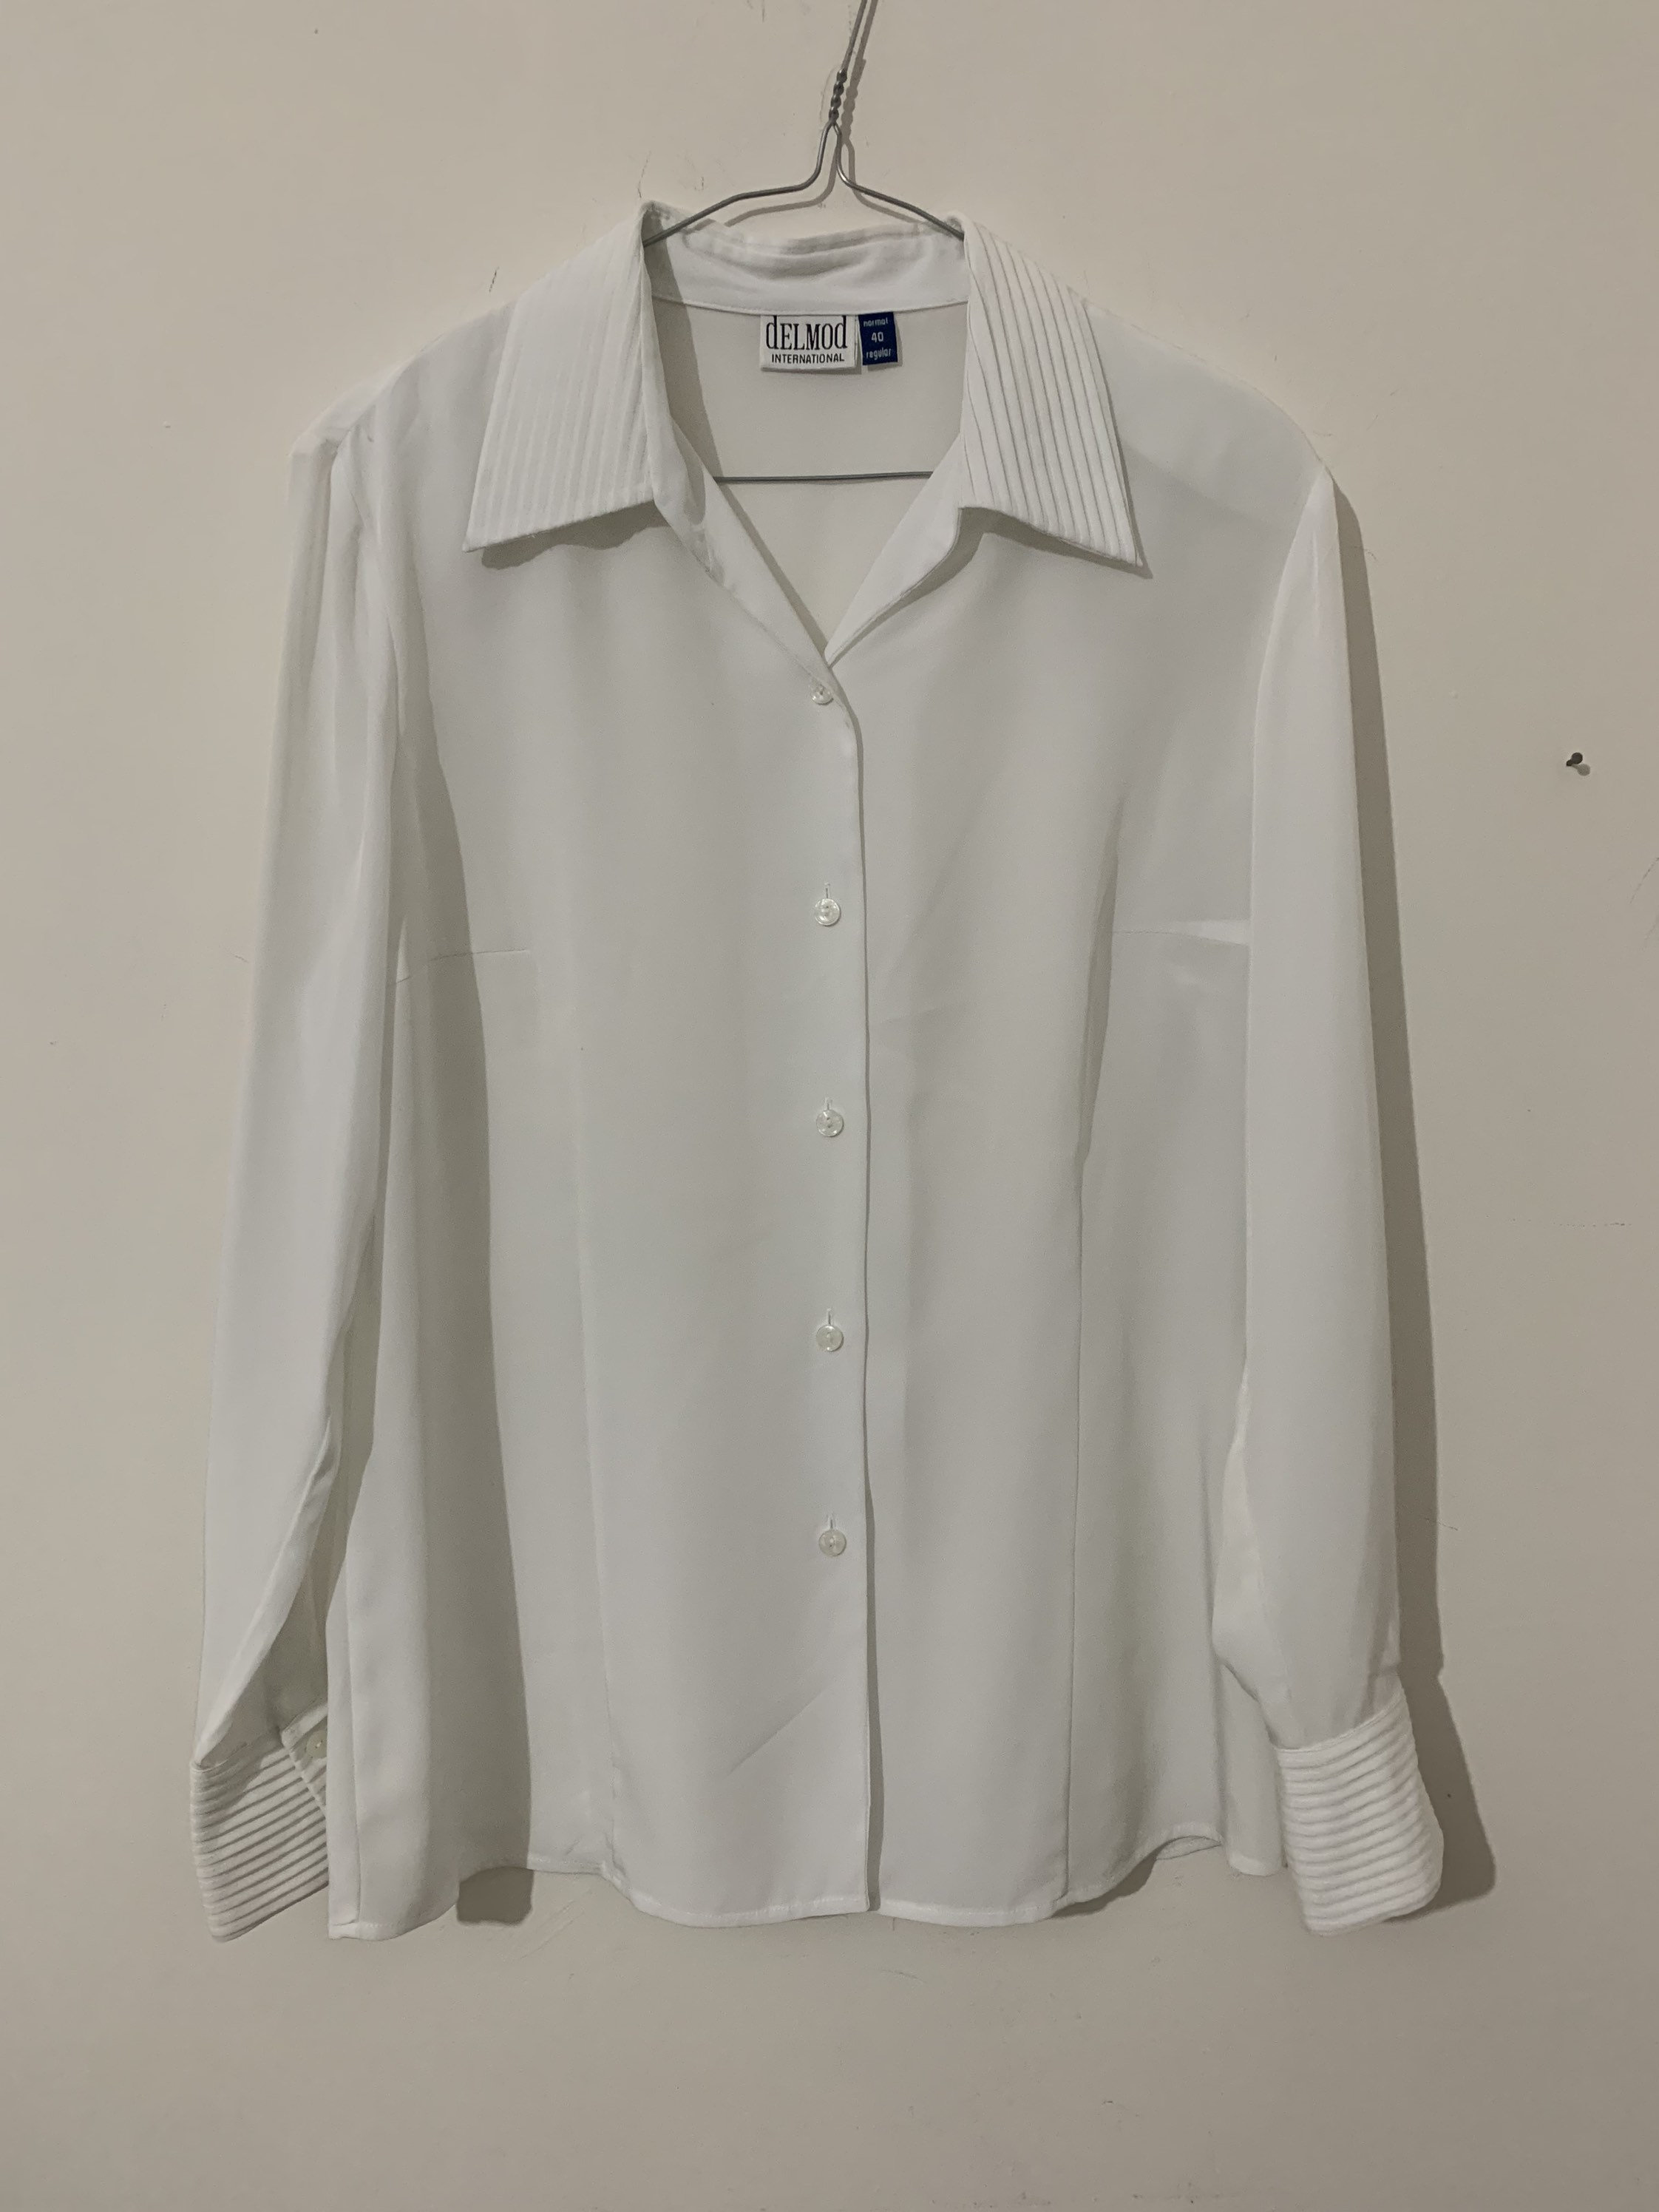 Ropa Ropa para niña Tops y camisetas Blusas Vintage 1930s algodón blanco organza ruffle blusa 